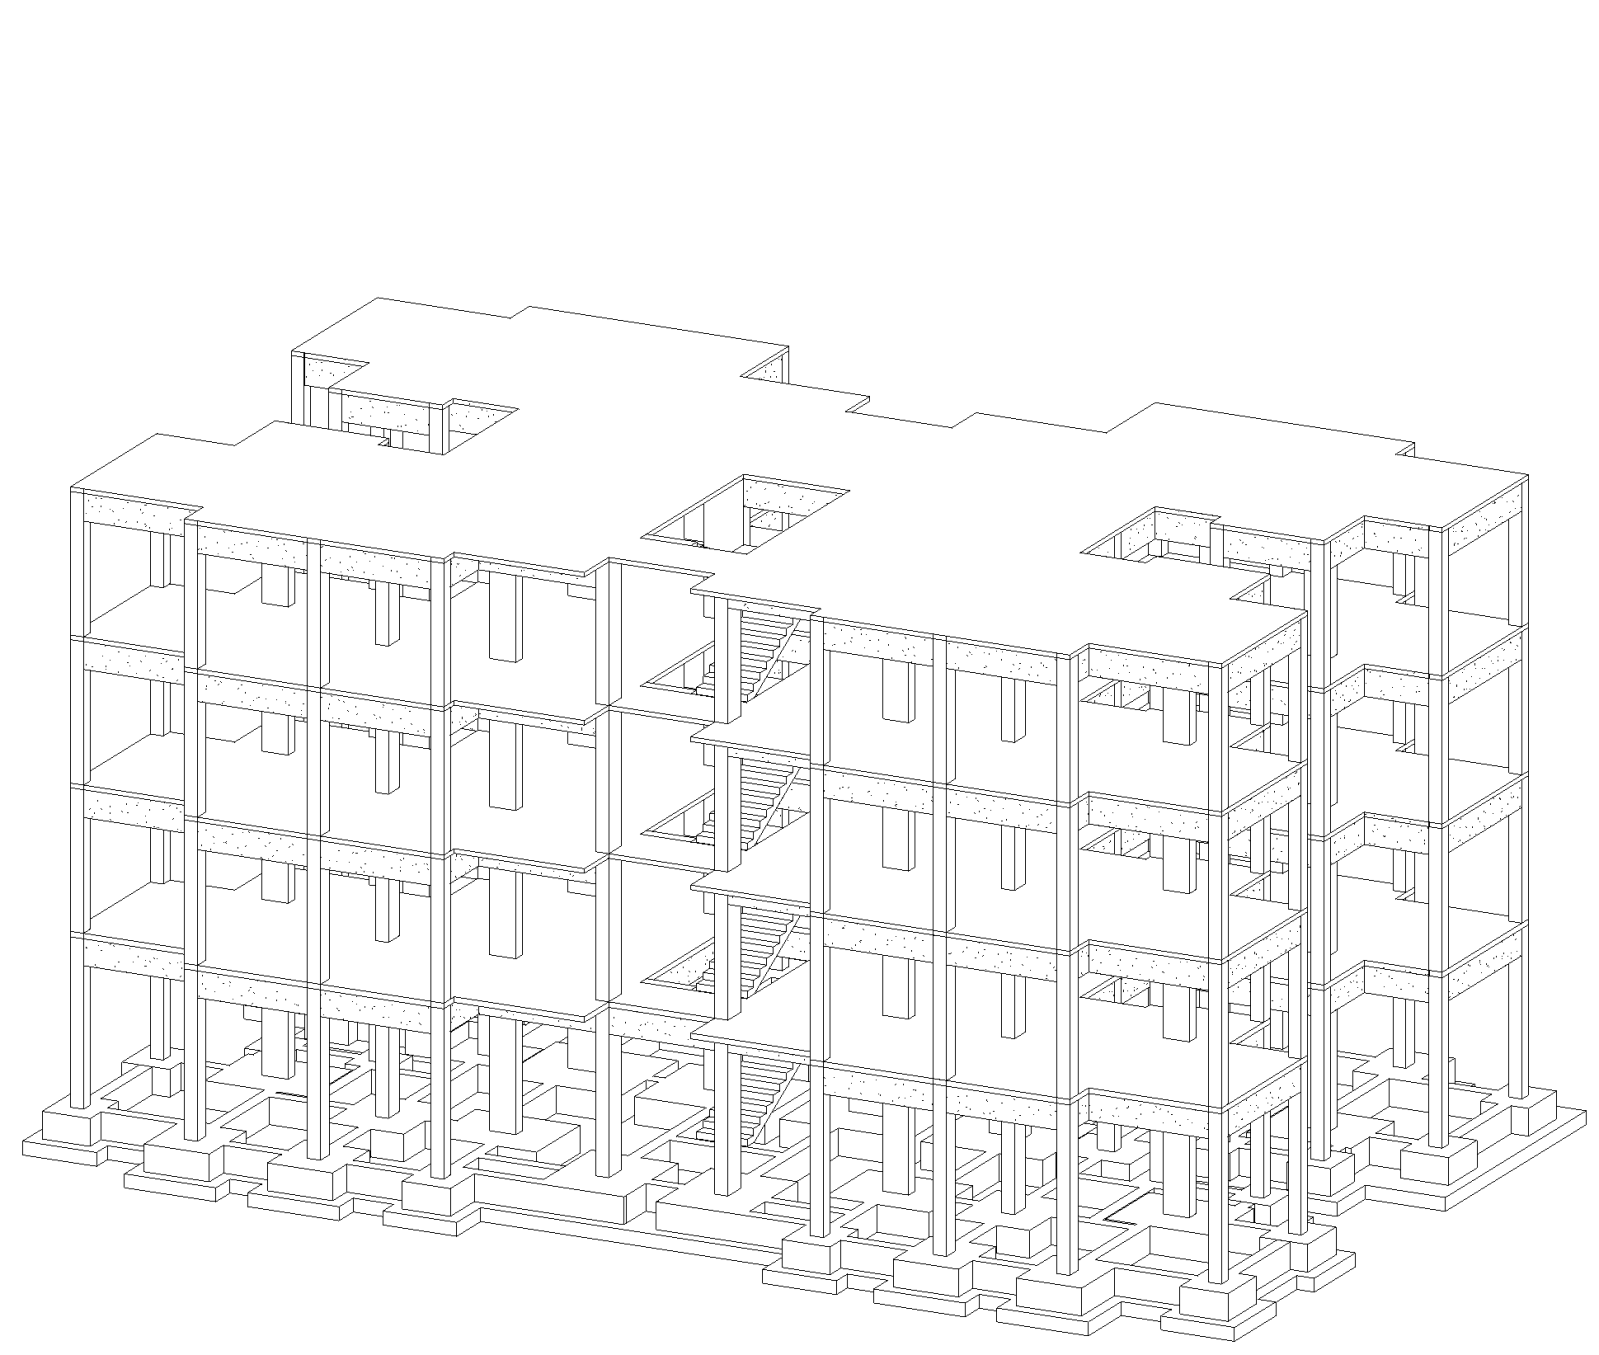  كورس نمذجة هيكل انشائى لمبنى سكنى باستخدام Revit 2014 باللغة العربية - م احمد عبدالنبى 